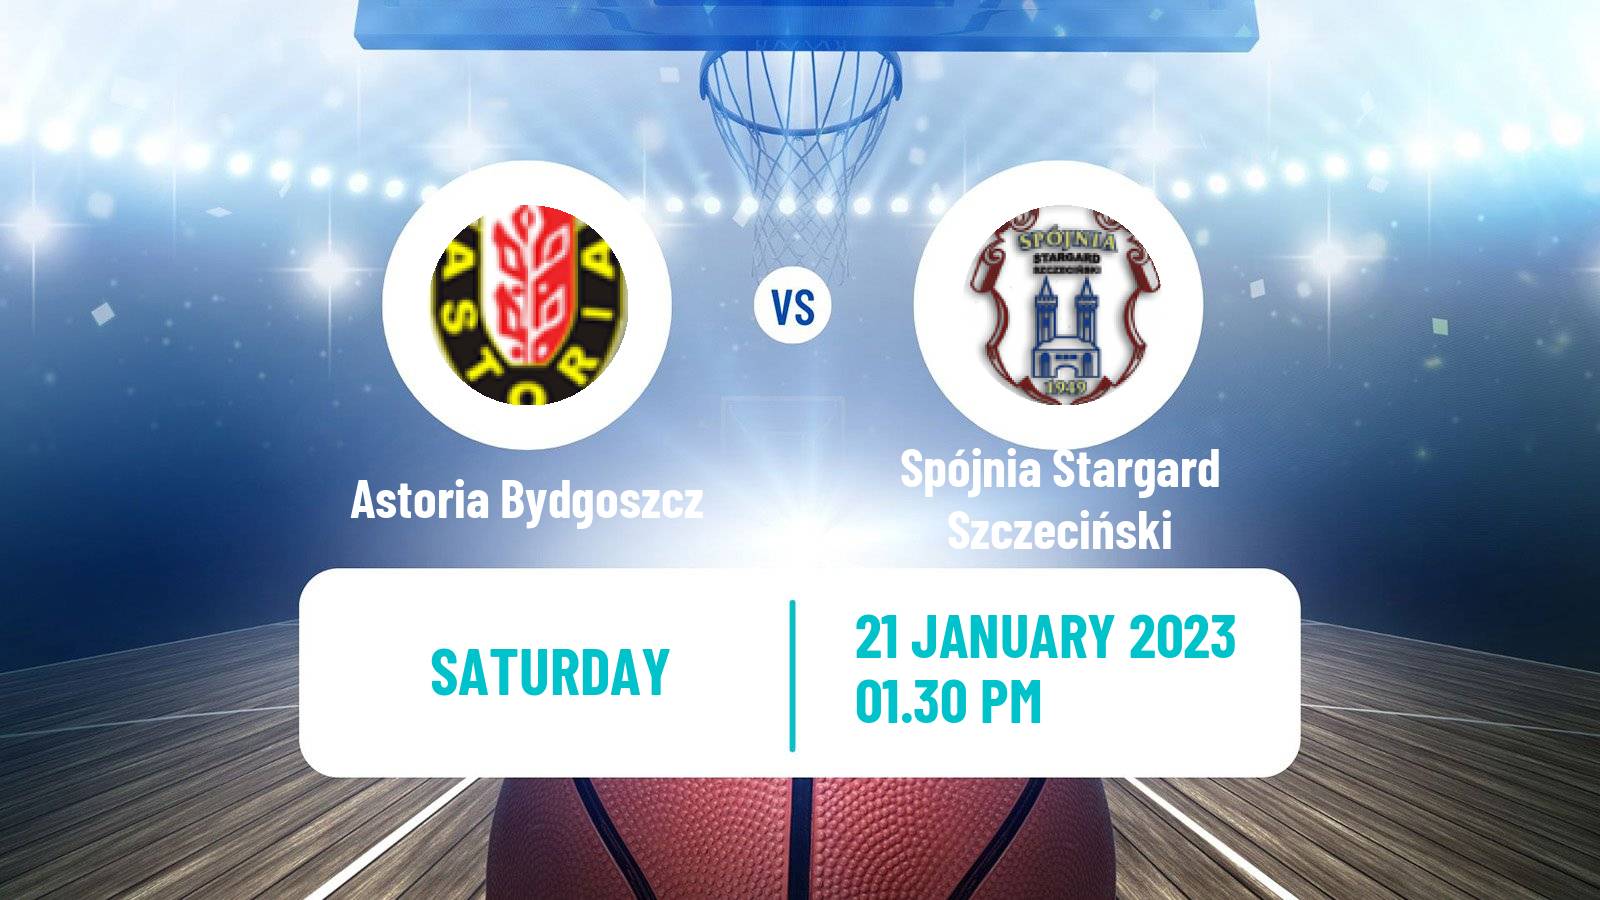 Basketball Polish Basket Liga Astoria Bydgoszcz - Spójnia Stargard Szczeciński